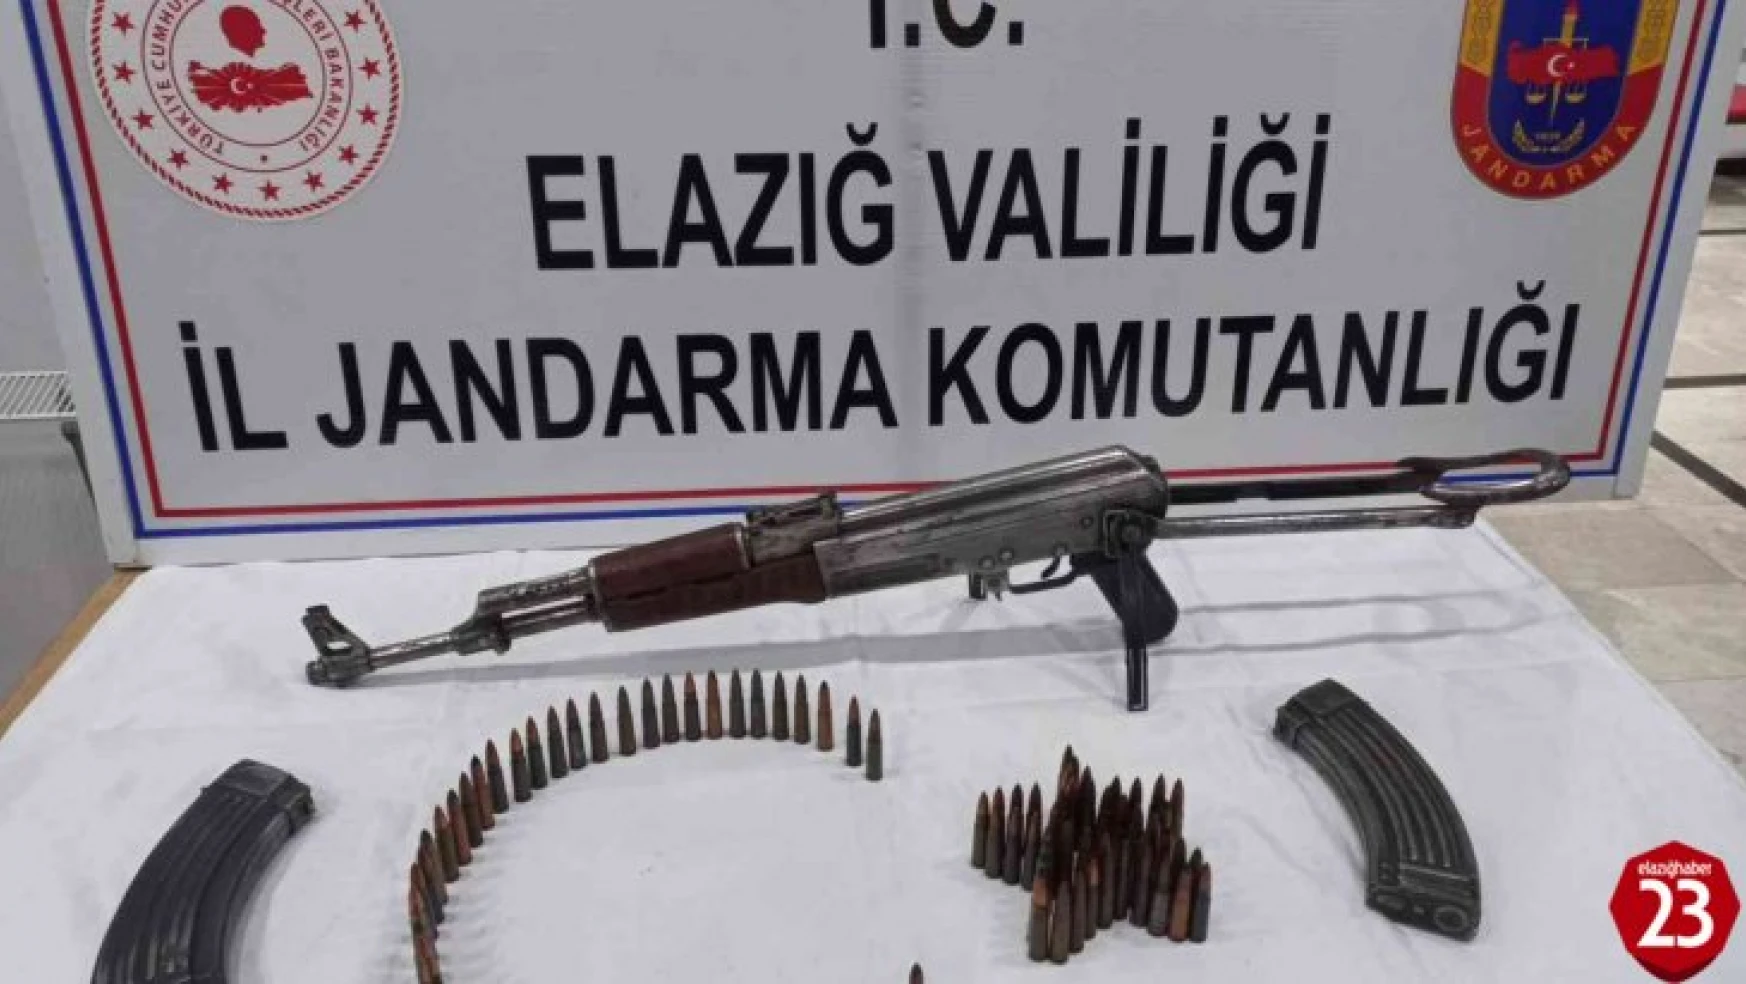 Elazığ'da Silah Kaçakçılarına Yönelik Jandarmadan Operasyon, Kalaşnikof Ele Geçirildi